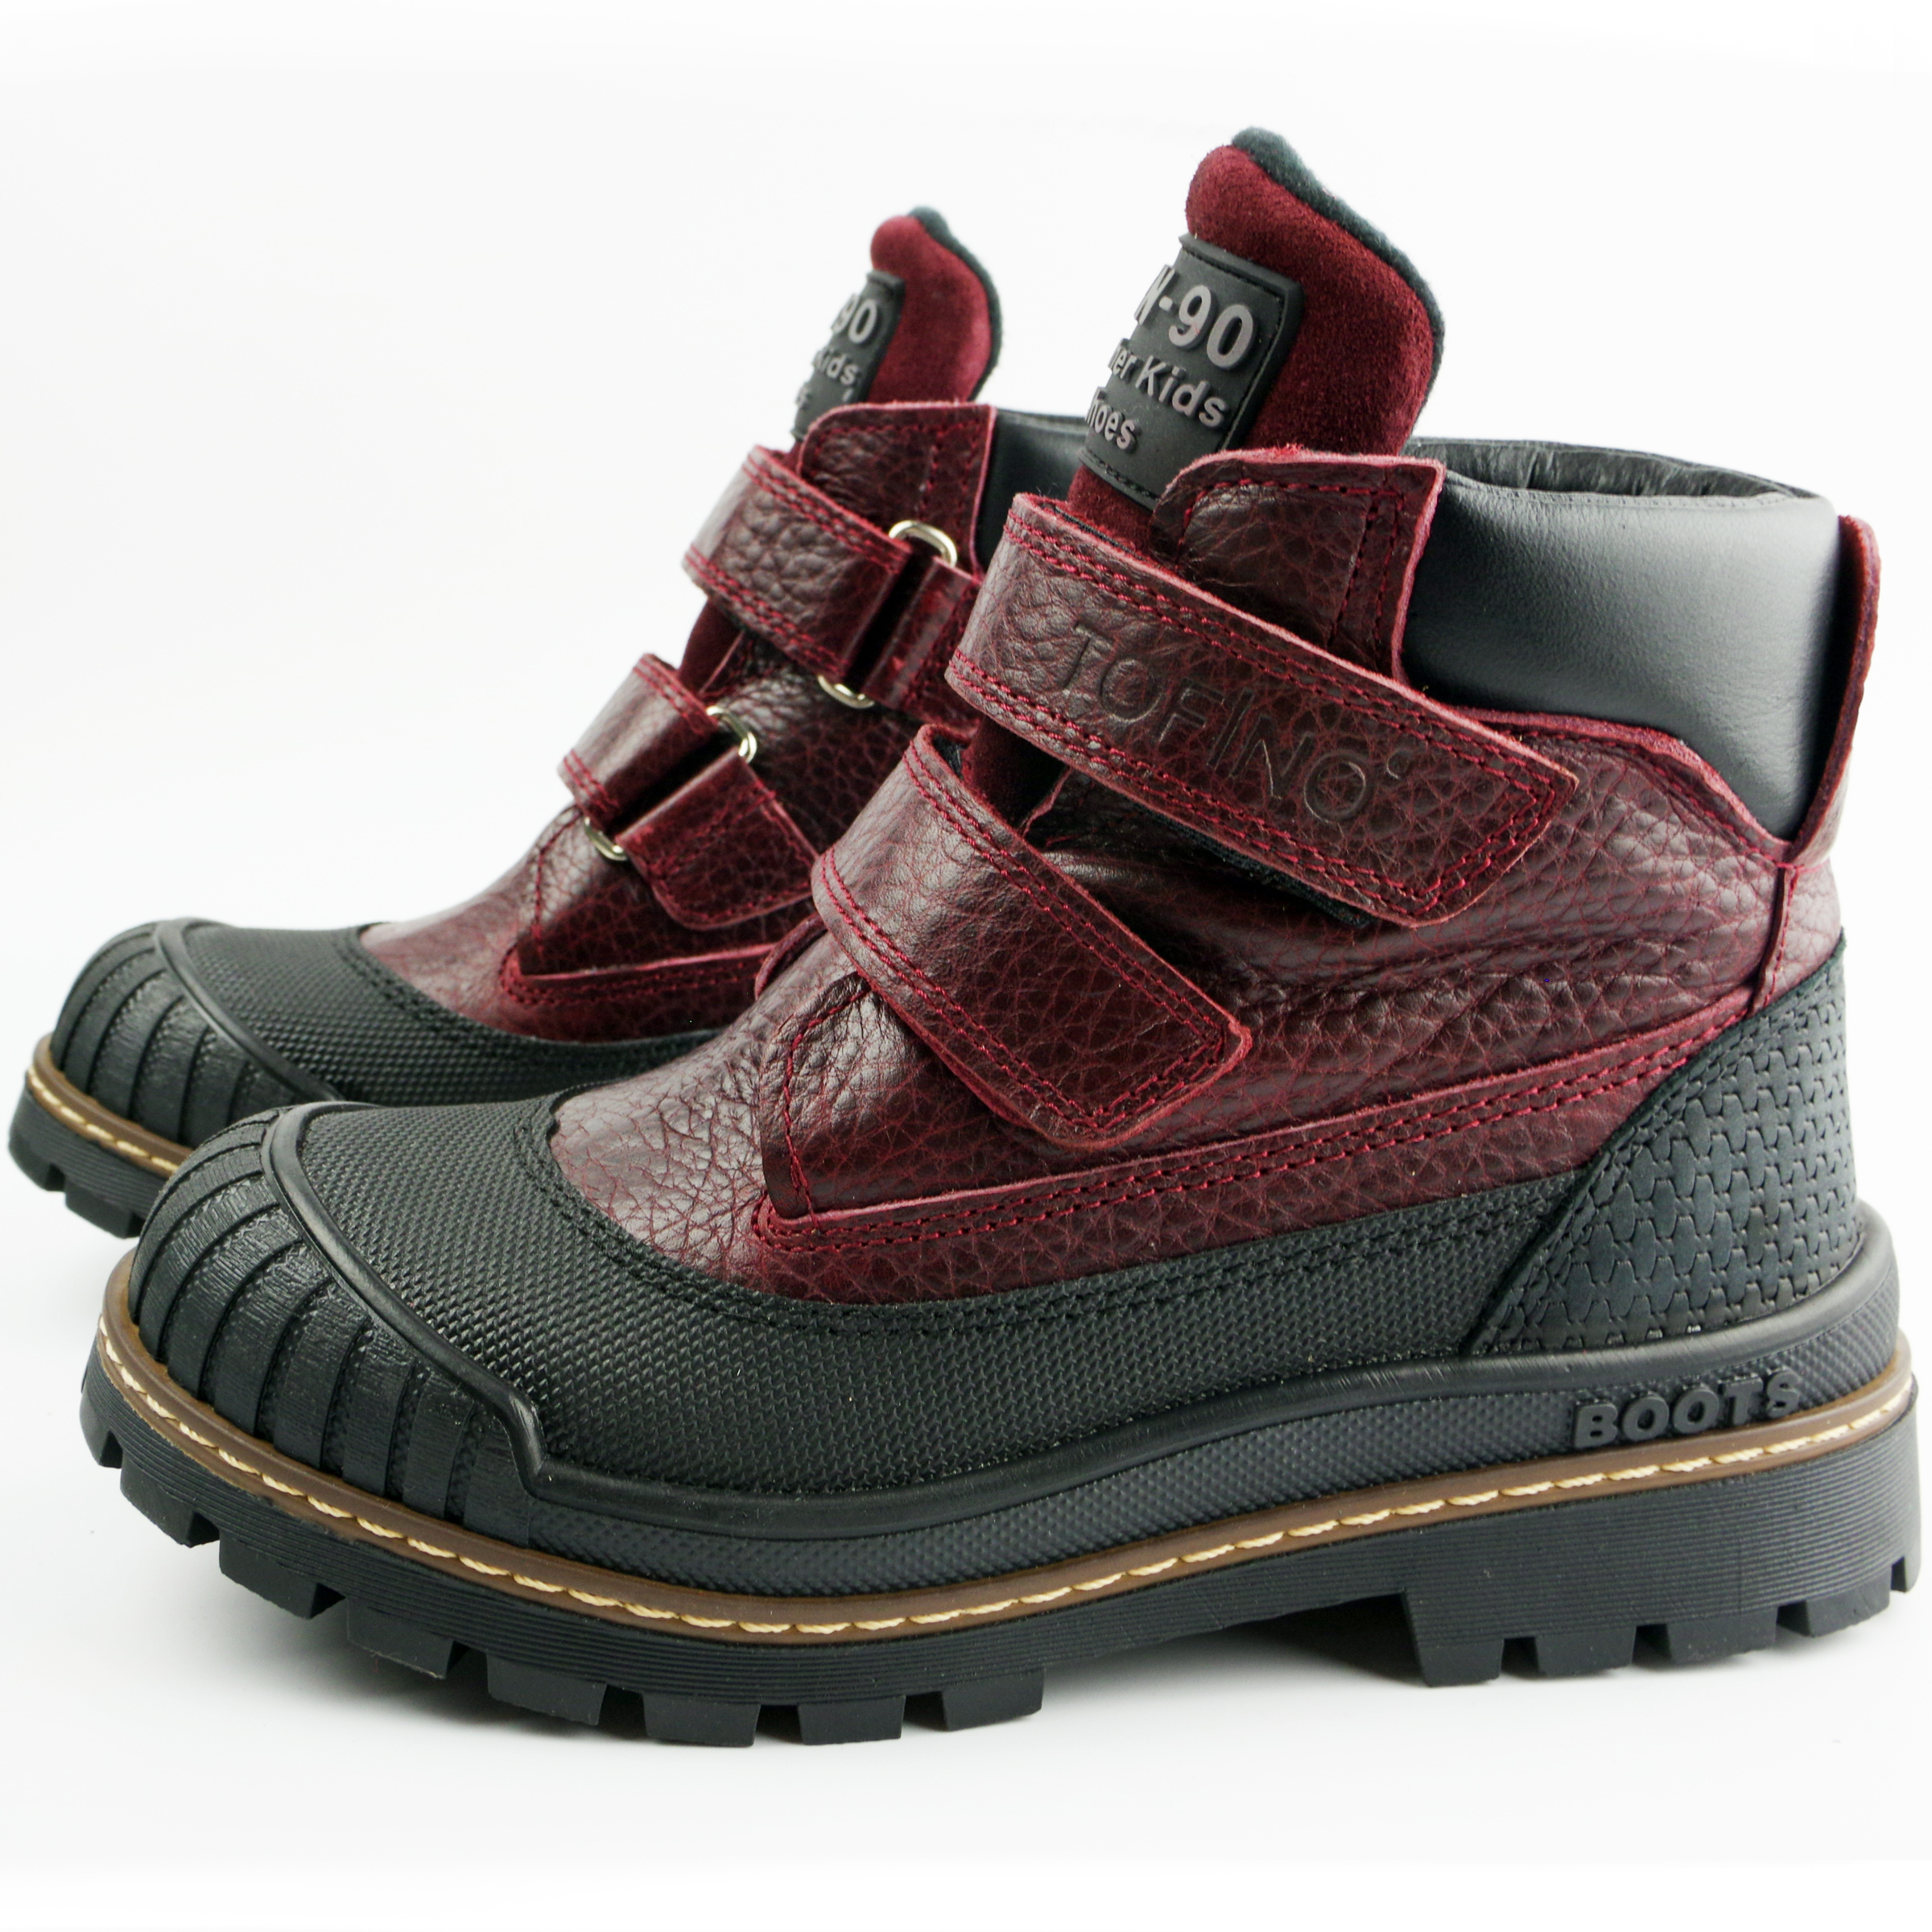 Демисезонные ботинки (2149) материал Нубук, цвет Бордовый  для девочки 31-36 размеры – Sole Kids. Фото 3